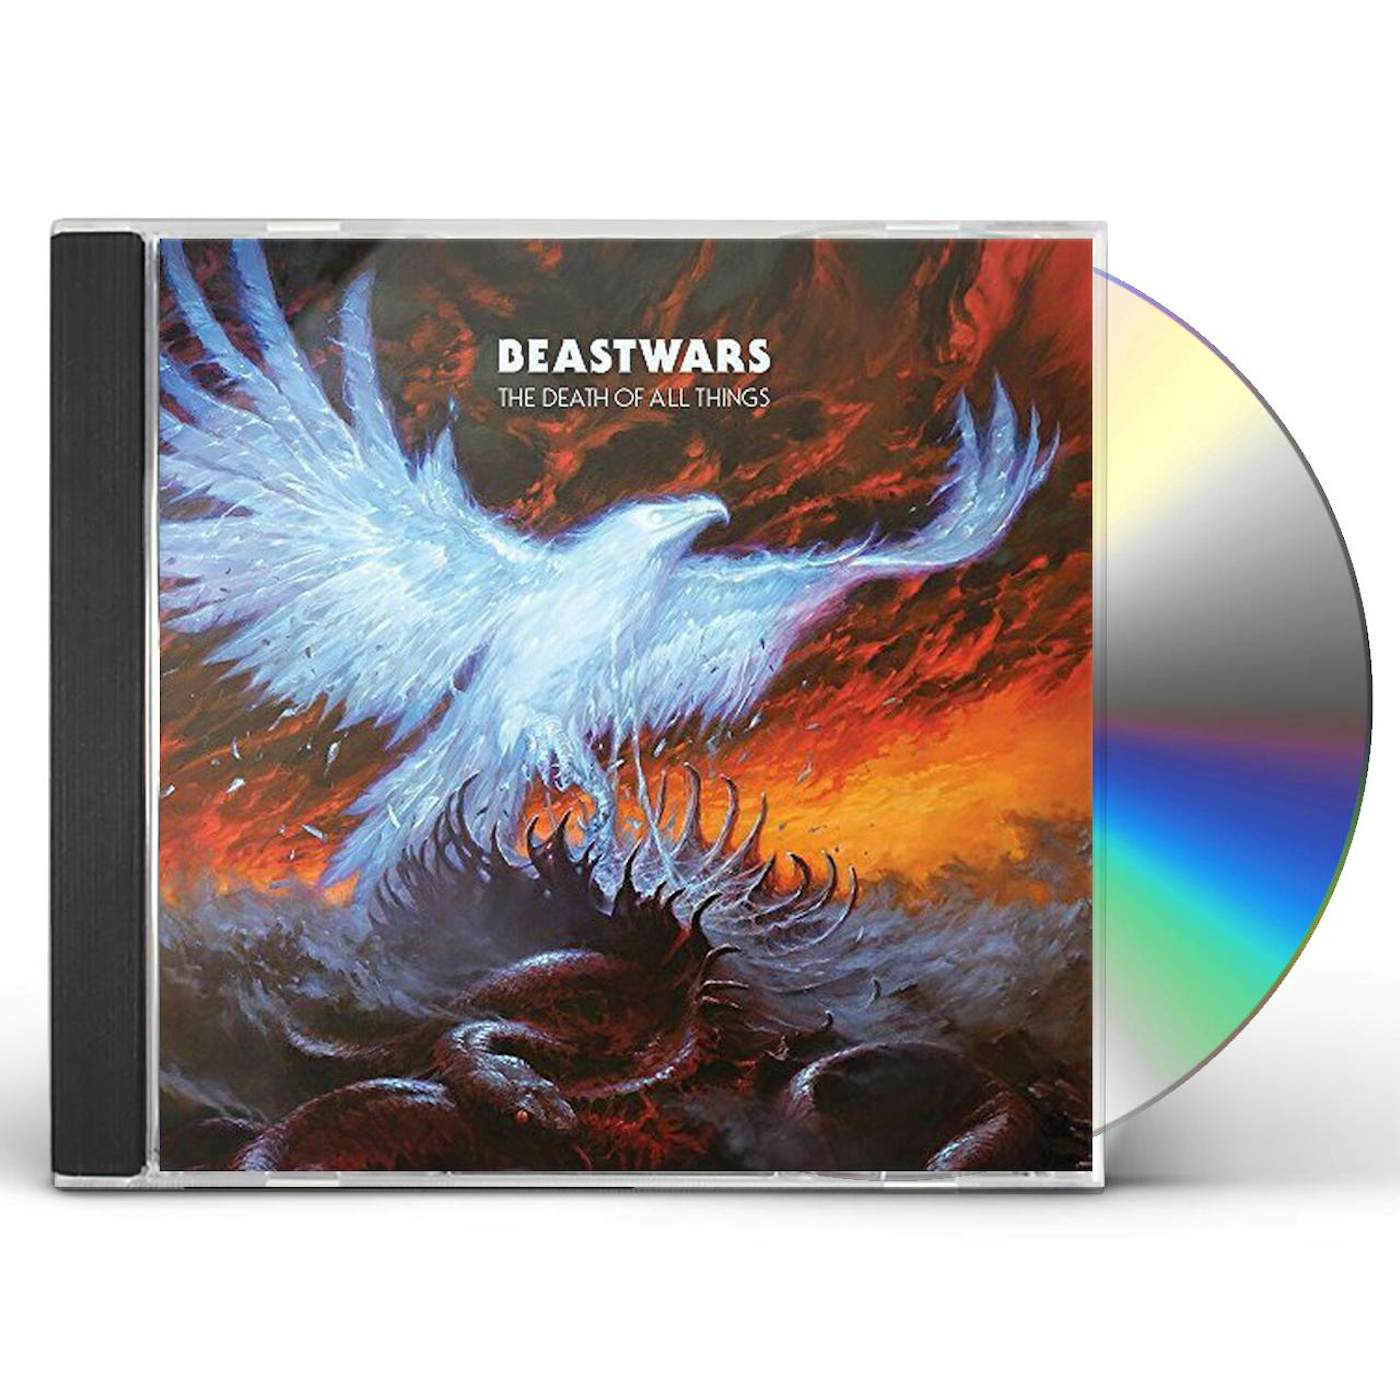 Beastwars DEATH OF ALL THINGS CD